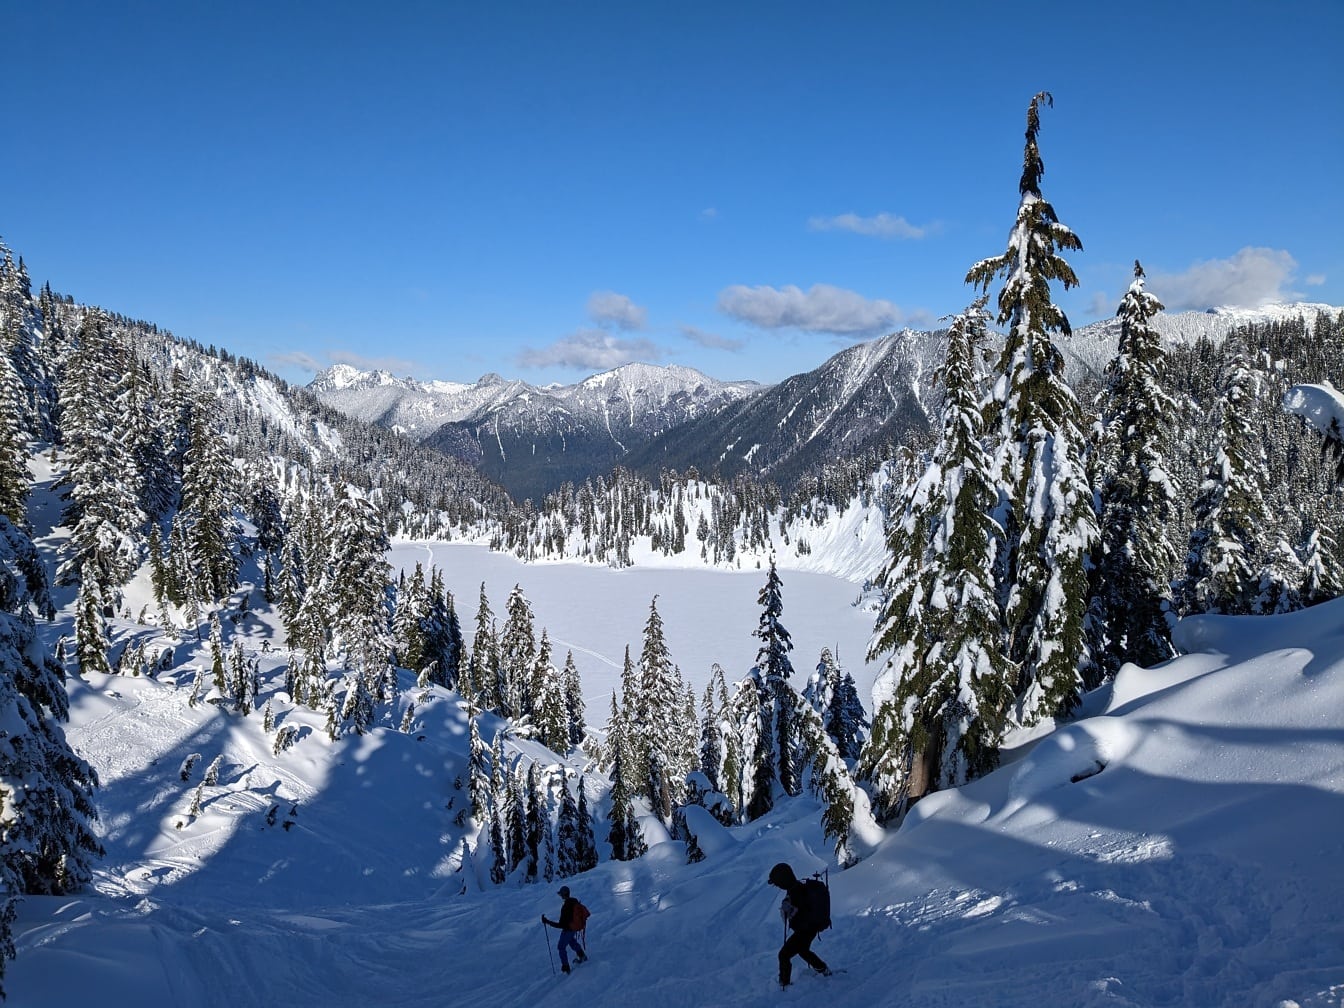 Hiihtäjät lumisella vuorenrinteellä talvisessa vaellusseikkailussa